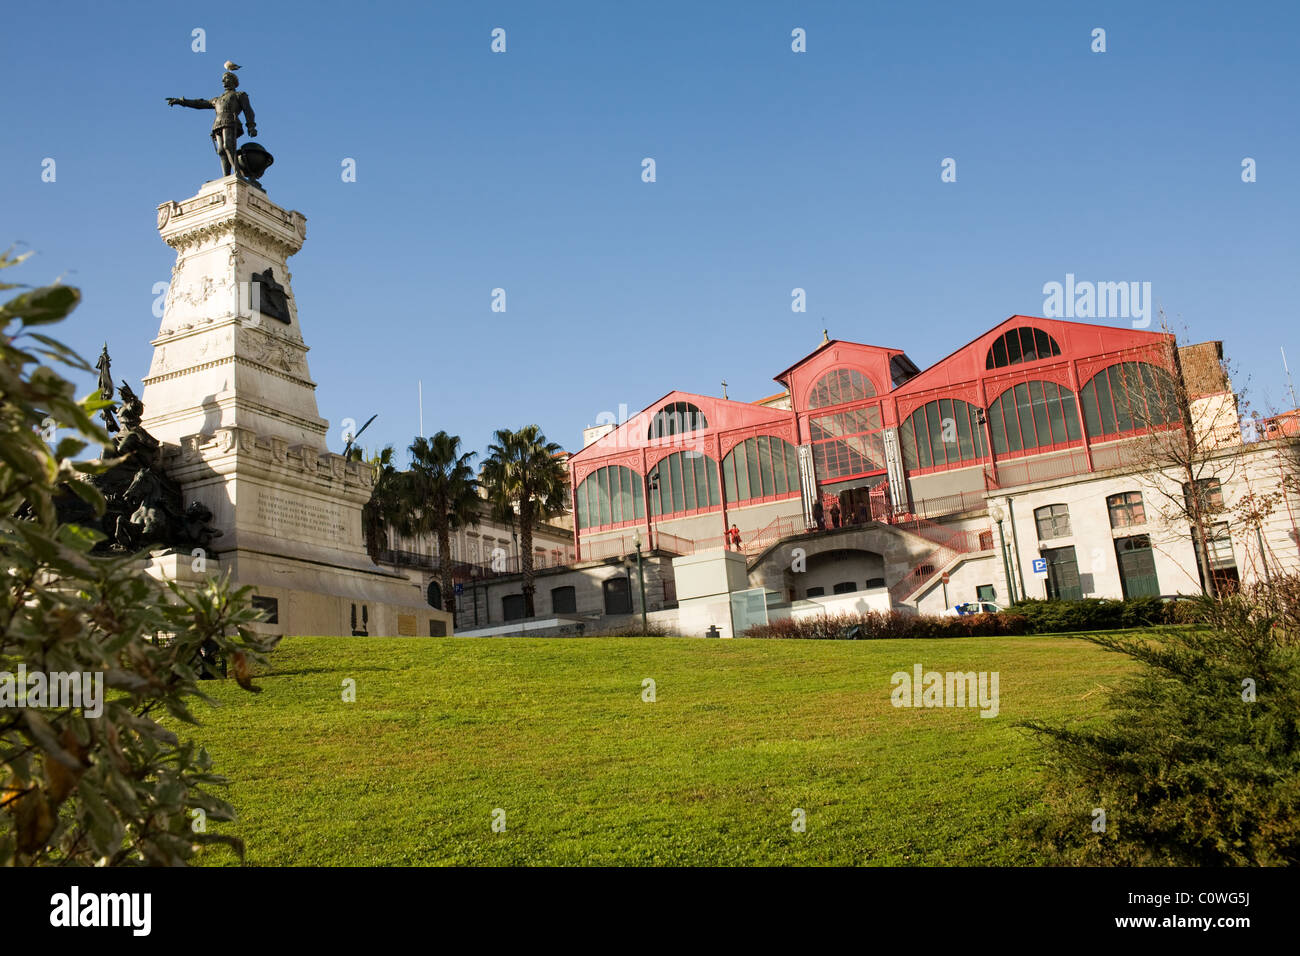 Monument d'Henri le Navigateur et marché Ferreira Borges, 1888, l'architecture du fer, Porto, Portugal Banque D'Images